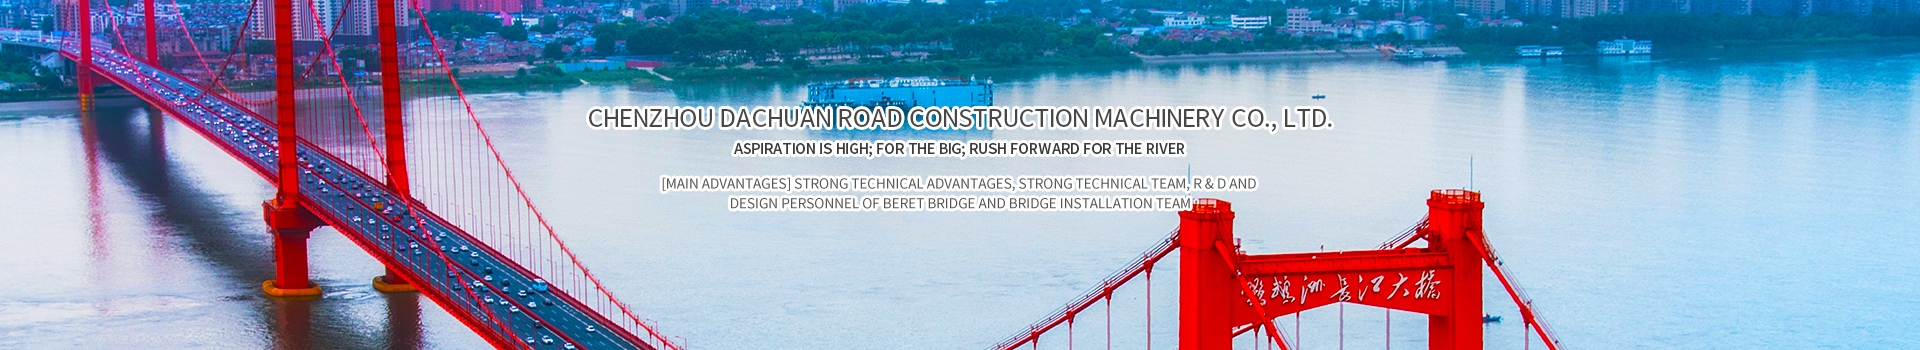 Chenzhou Dachuan Road Construction Machinery Co., Ltd._Hunan Machinery|Hunan Steel Bridge